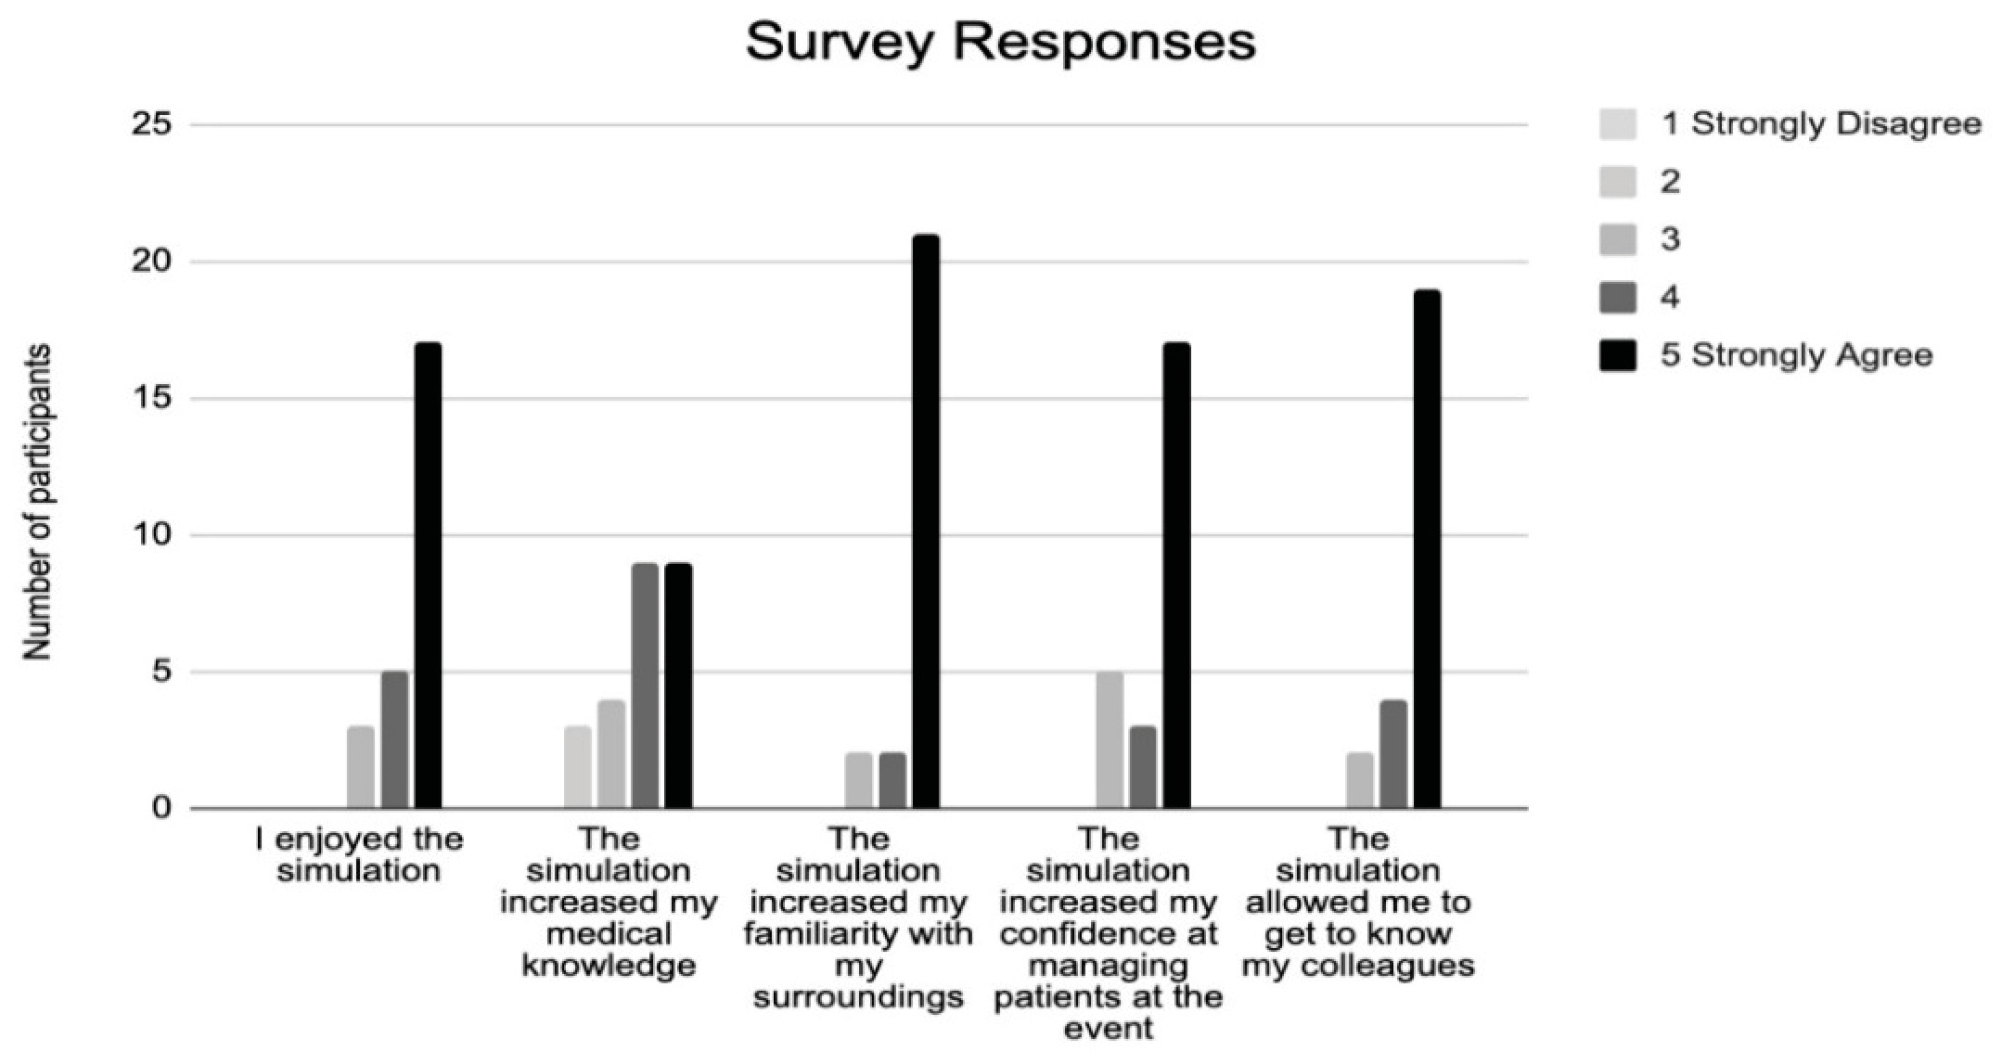 Responses of survey participants